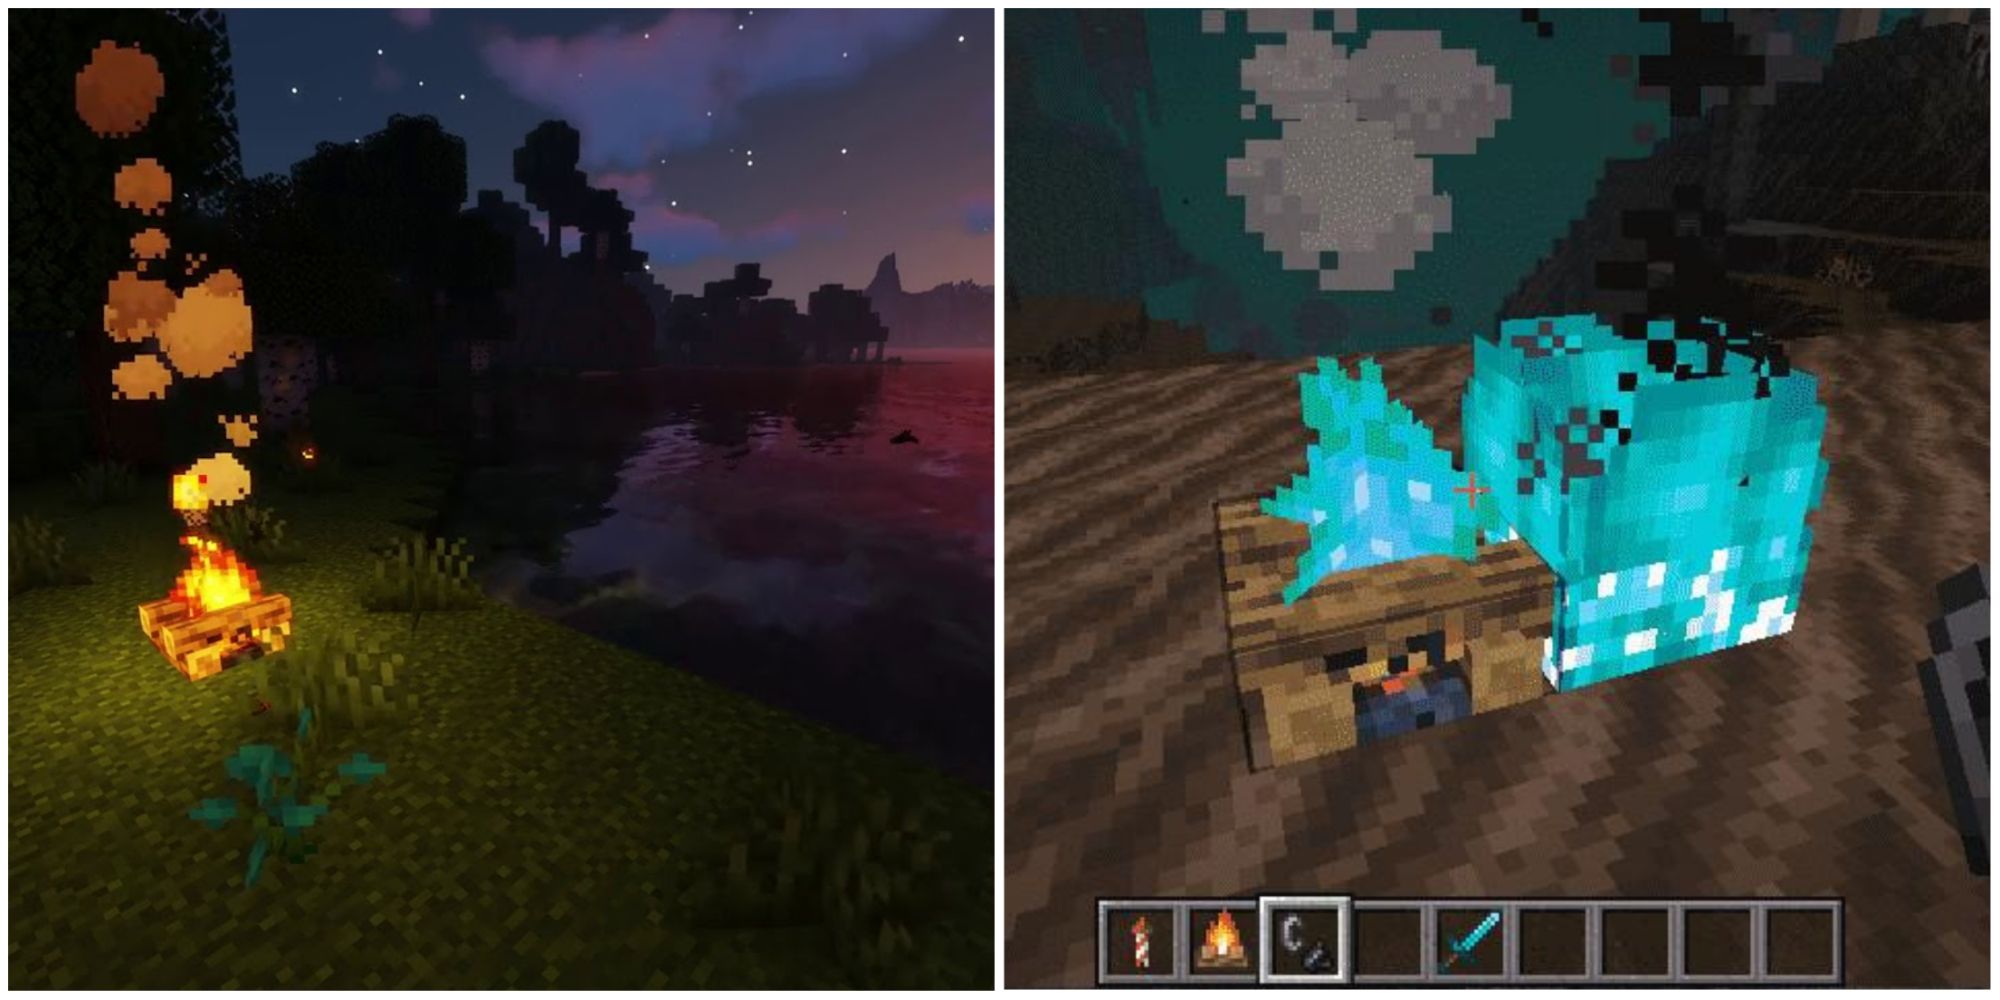 10 nguồn sáng trong Minecraft hữu dụng và có thể để bài trí